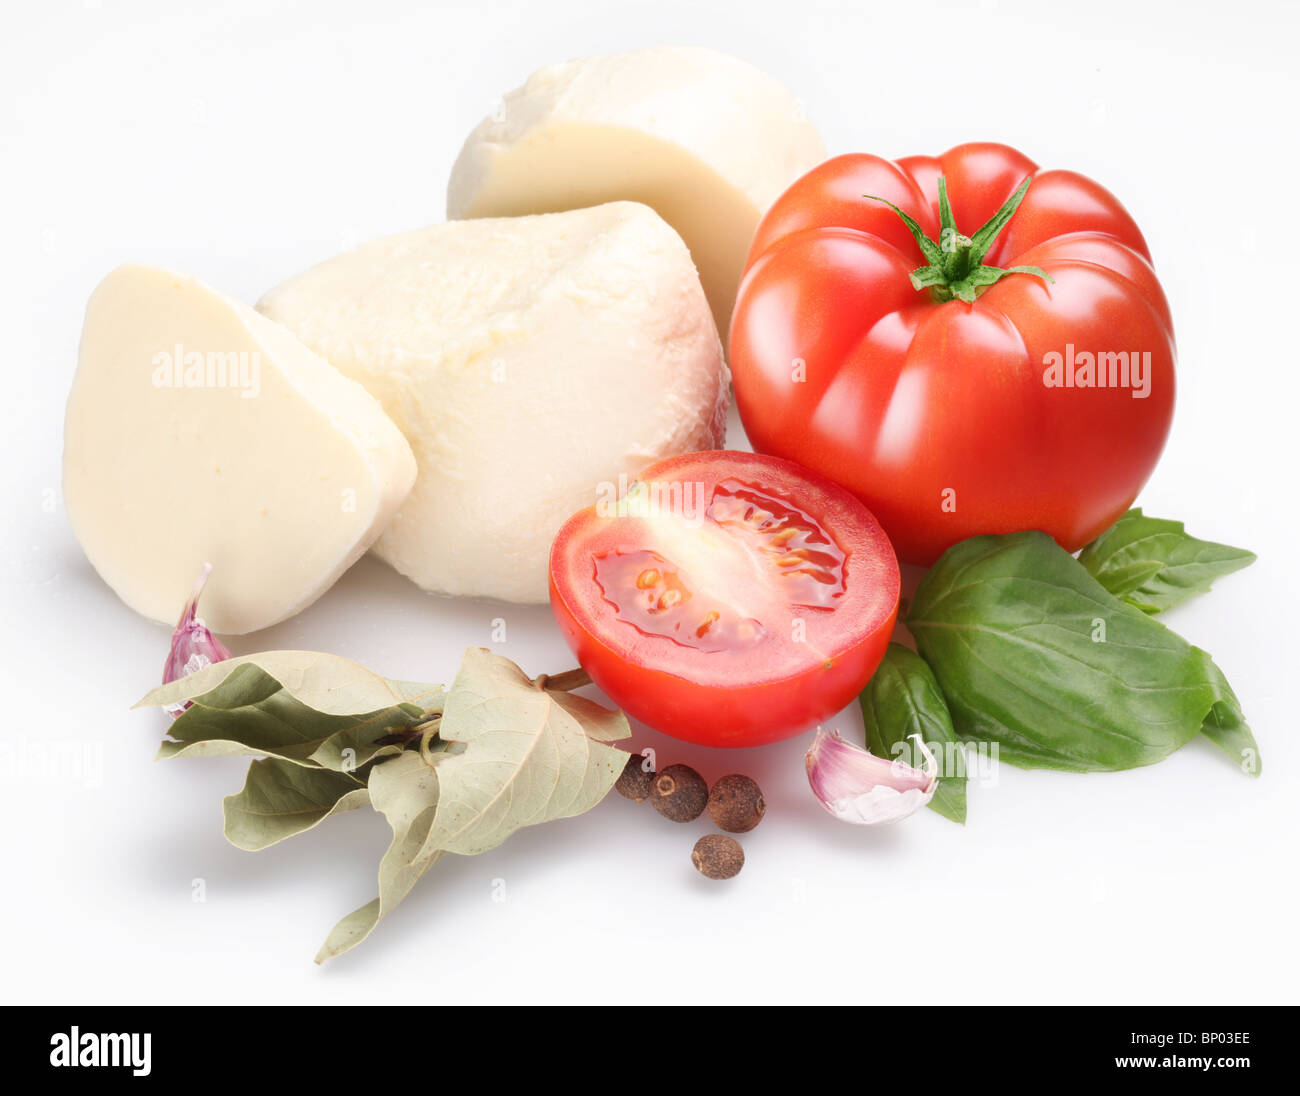 Ingrédients pour salade de tomates et mozzarella sur un fond blanc. Banque D'Images